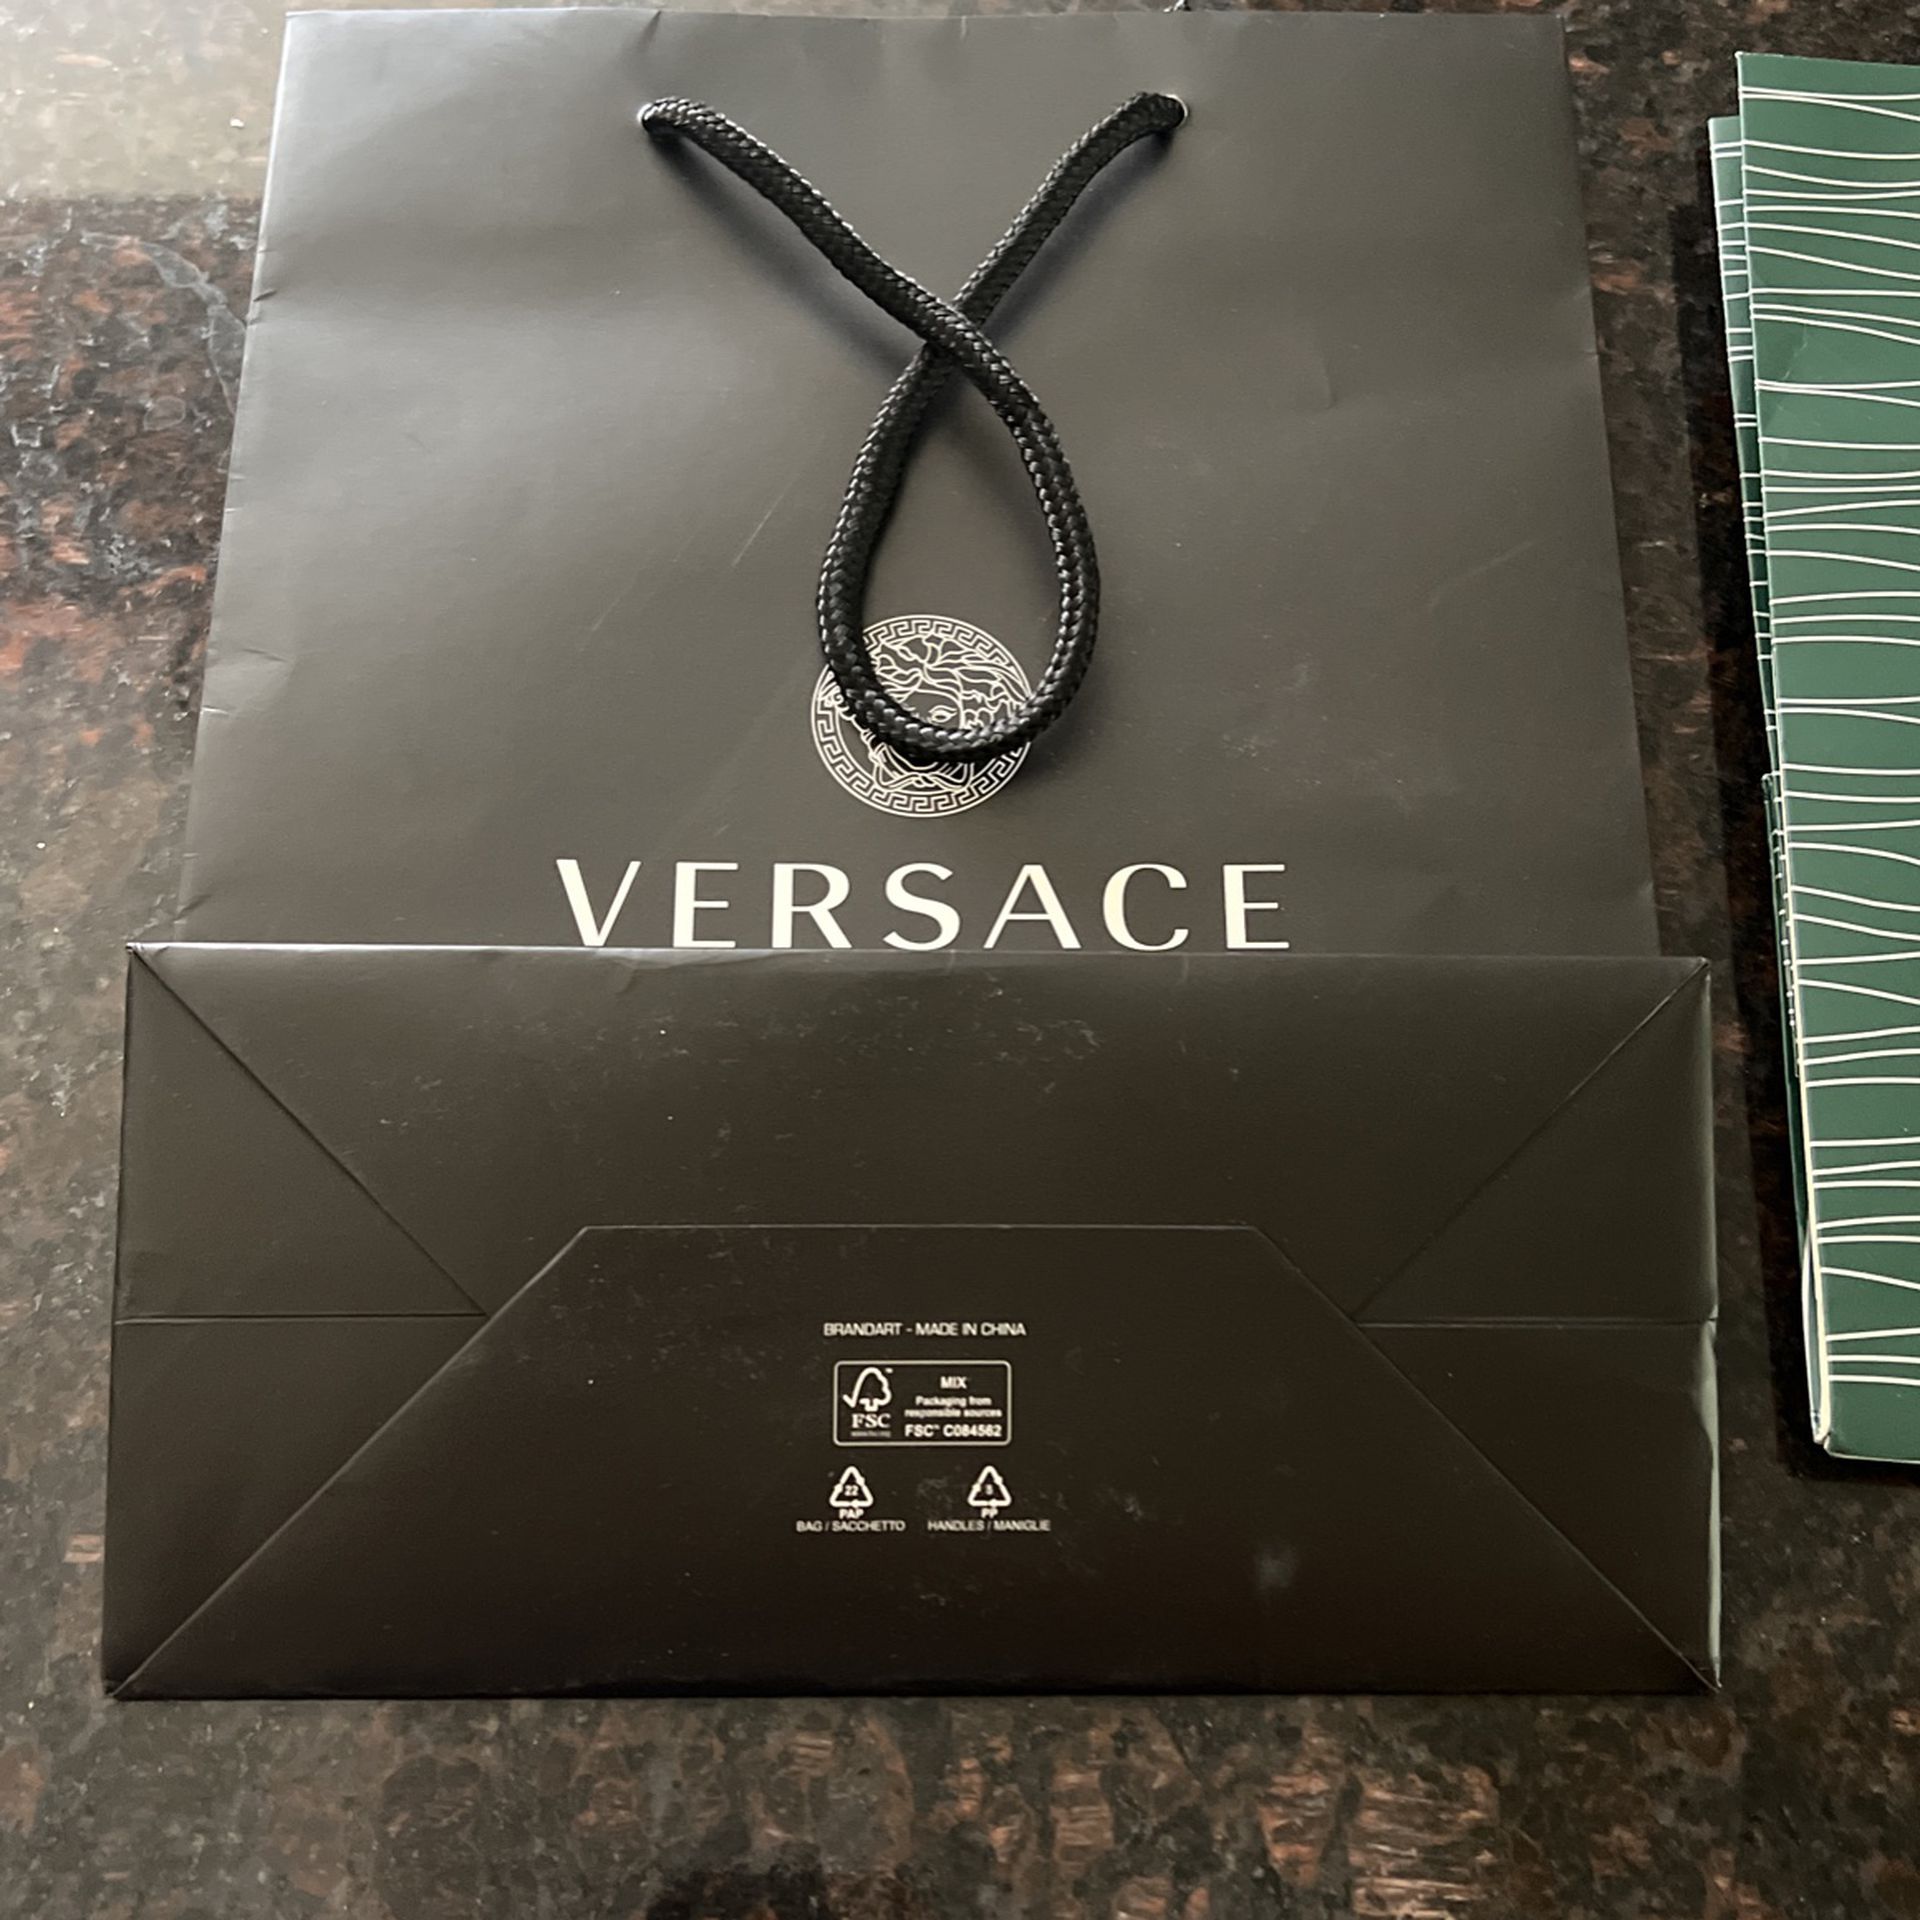 Versace/Rolex Bags